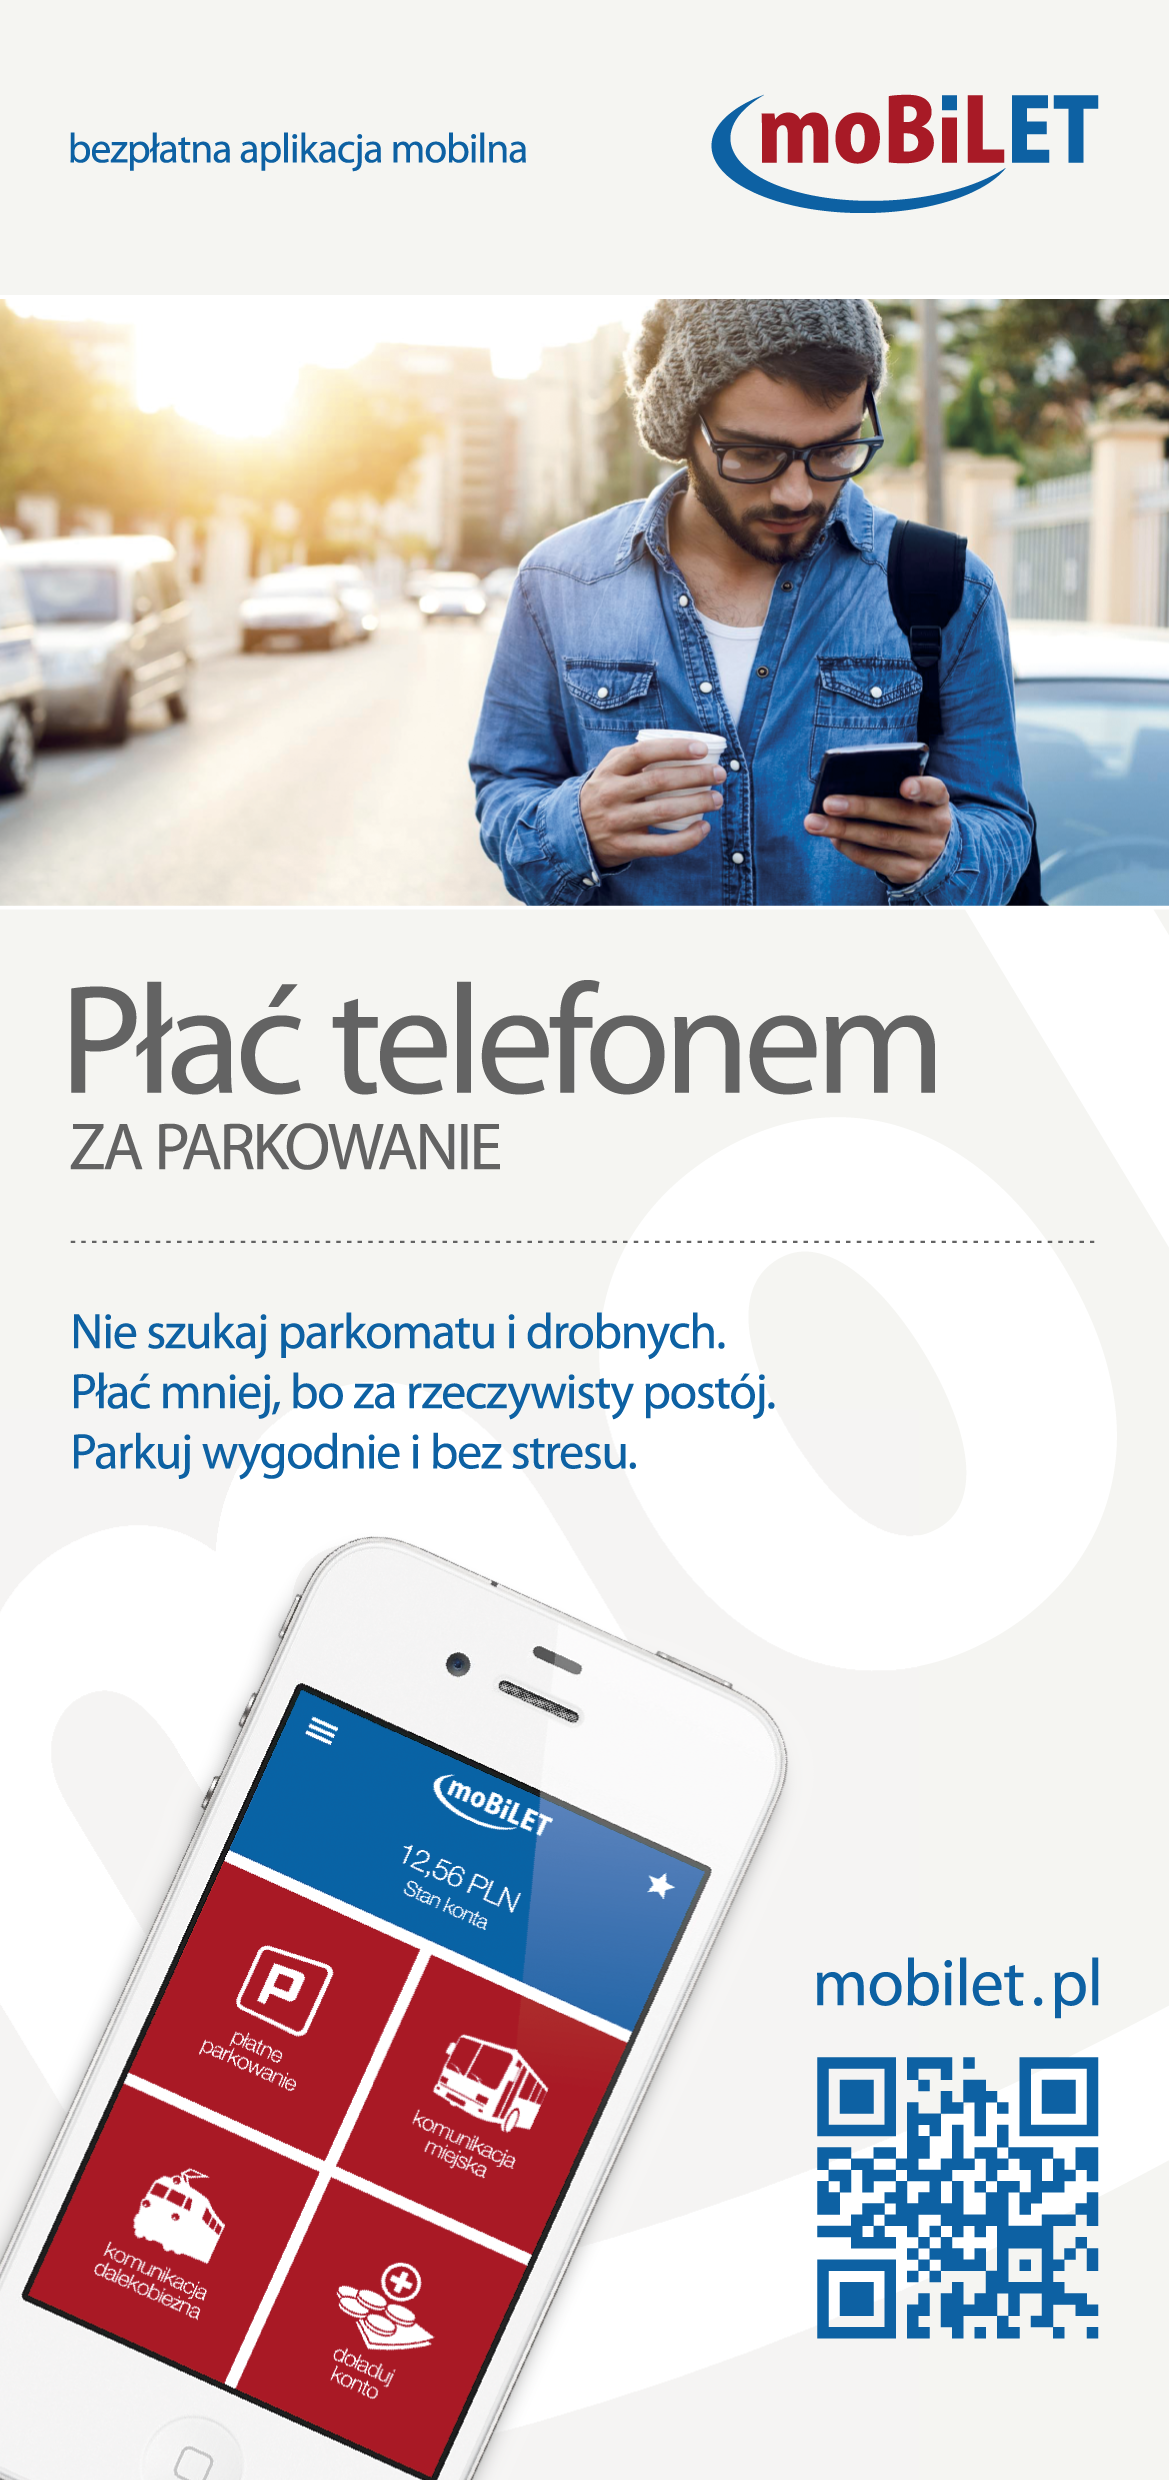 Smartfon zamiast parkometru na płatnych parkingach w Gryfowie Śląskim.